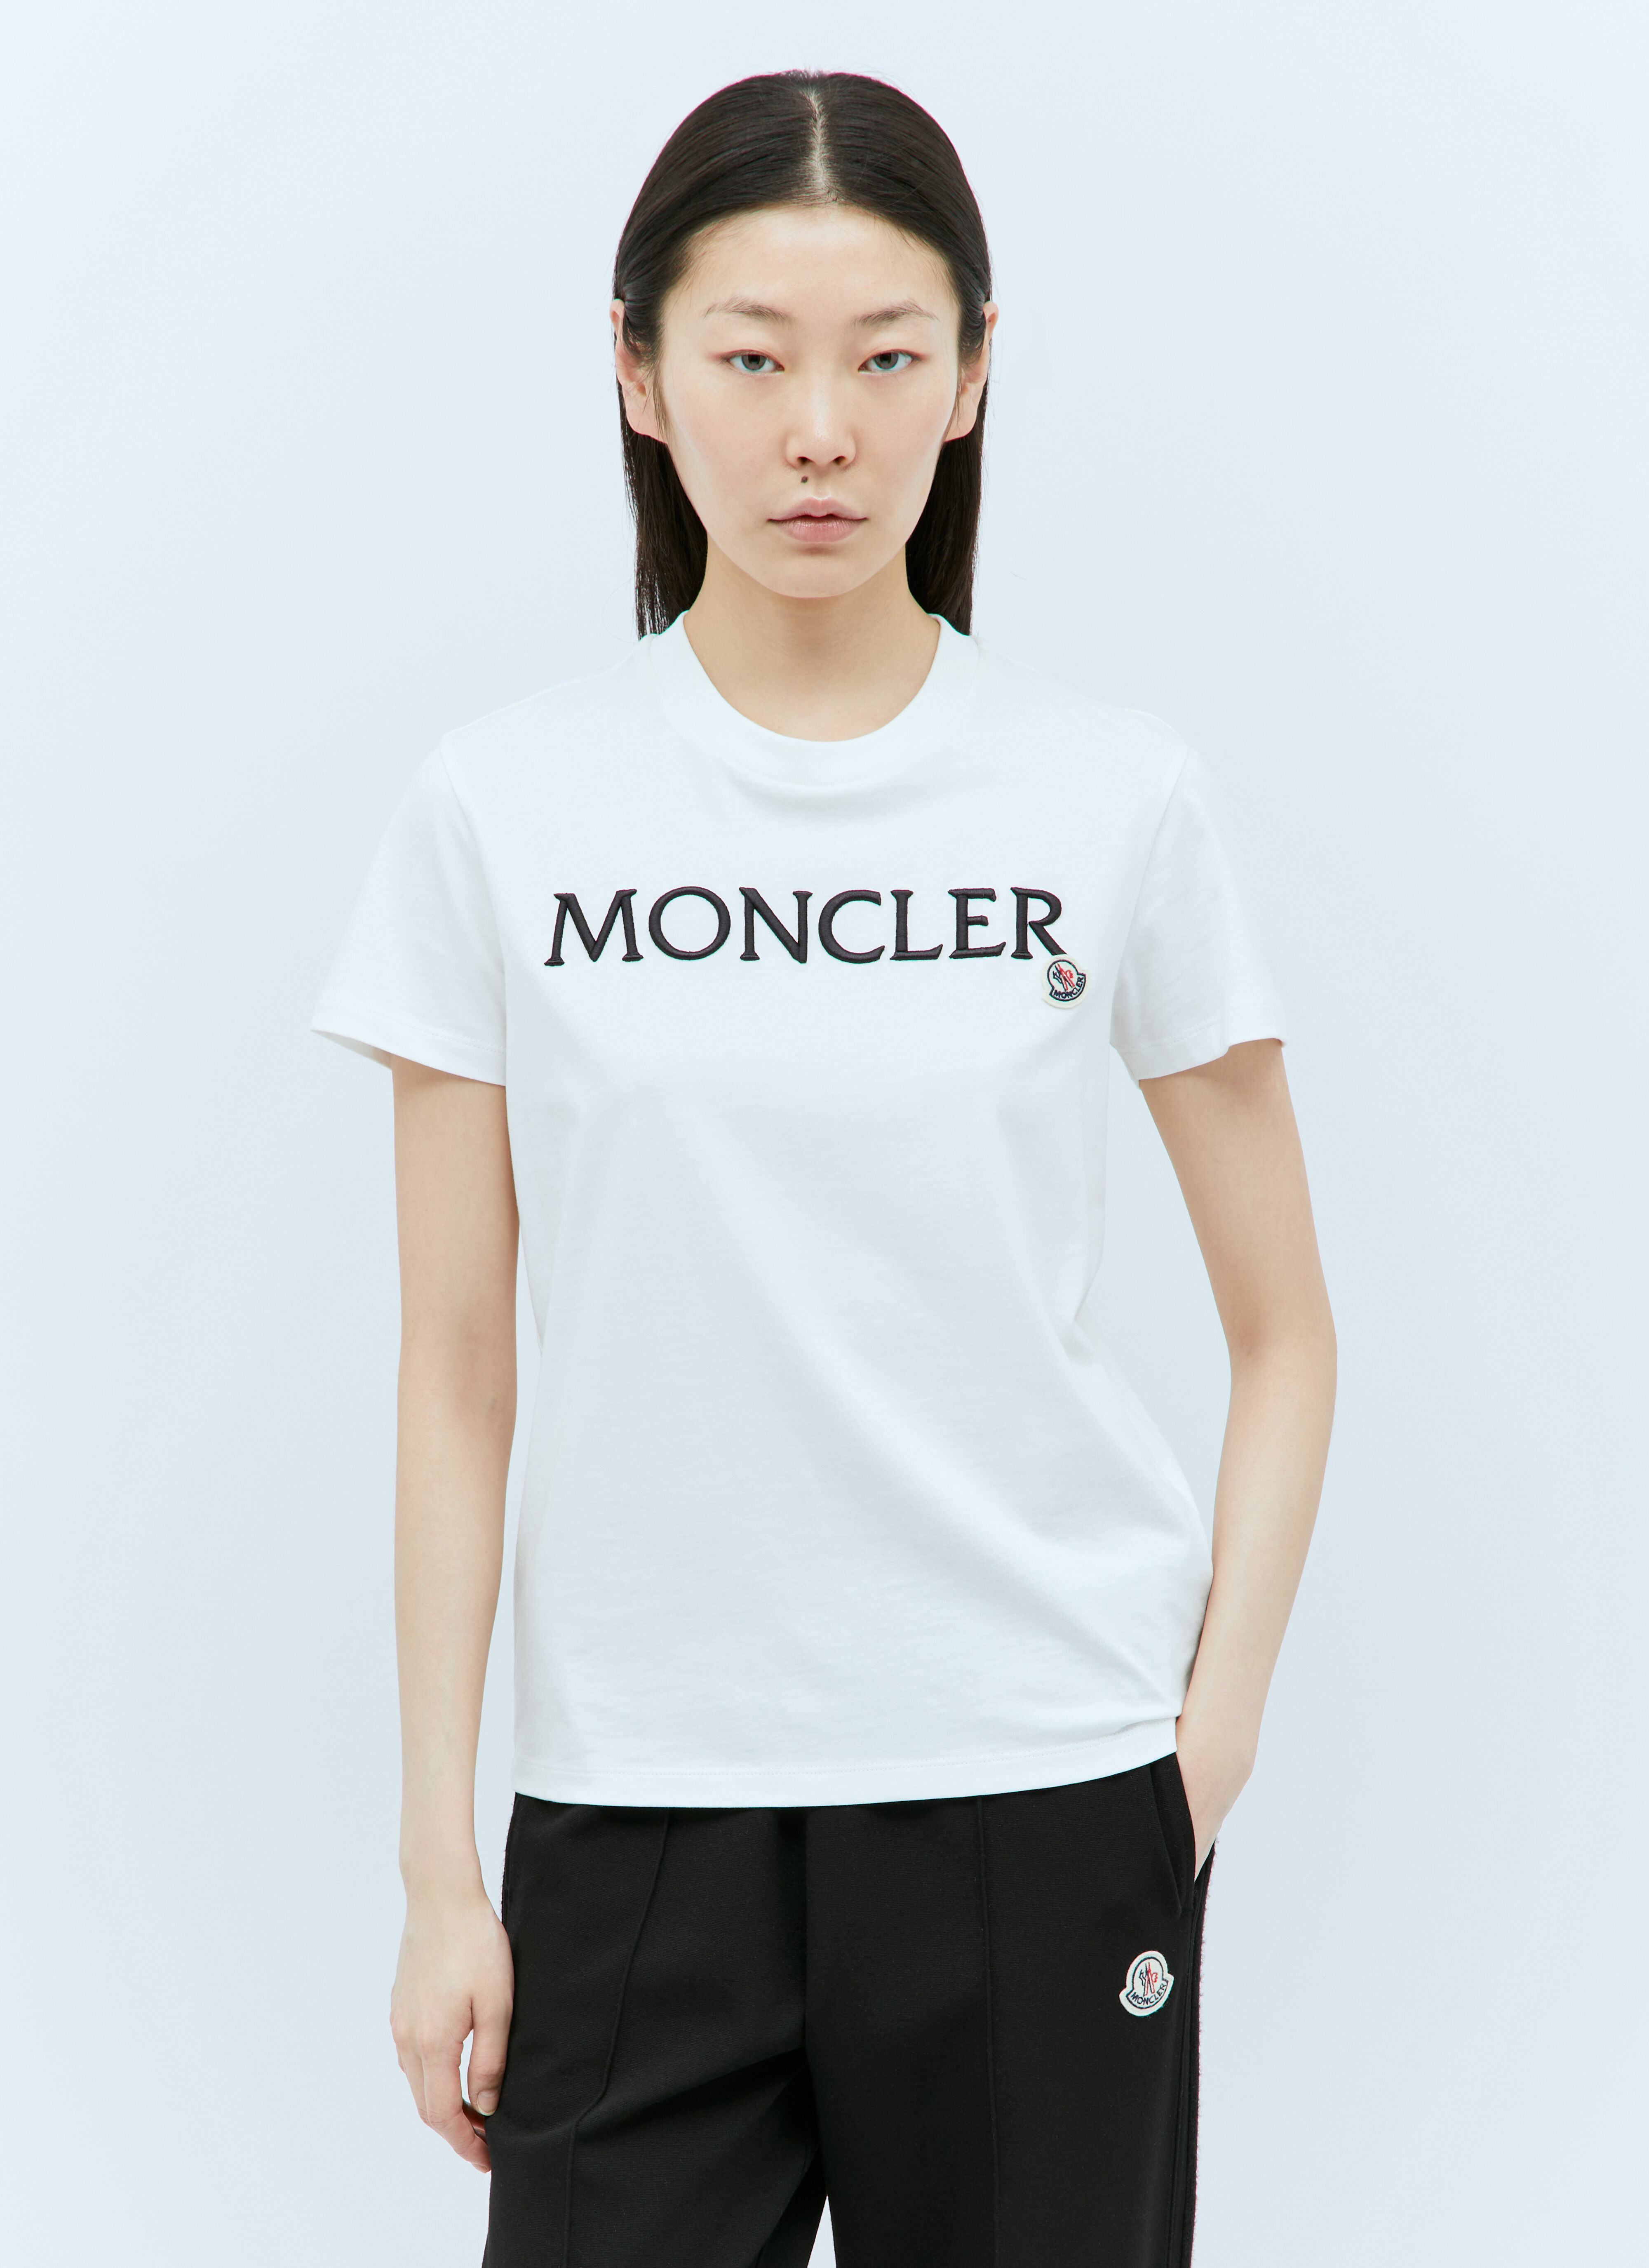 Jean Paul Gaultier 로고 패치 티셔츠 White jpg0258020